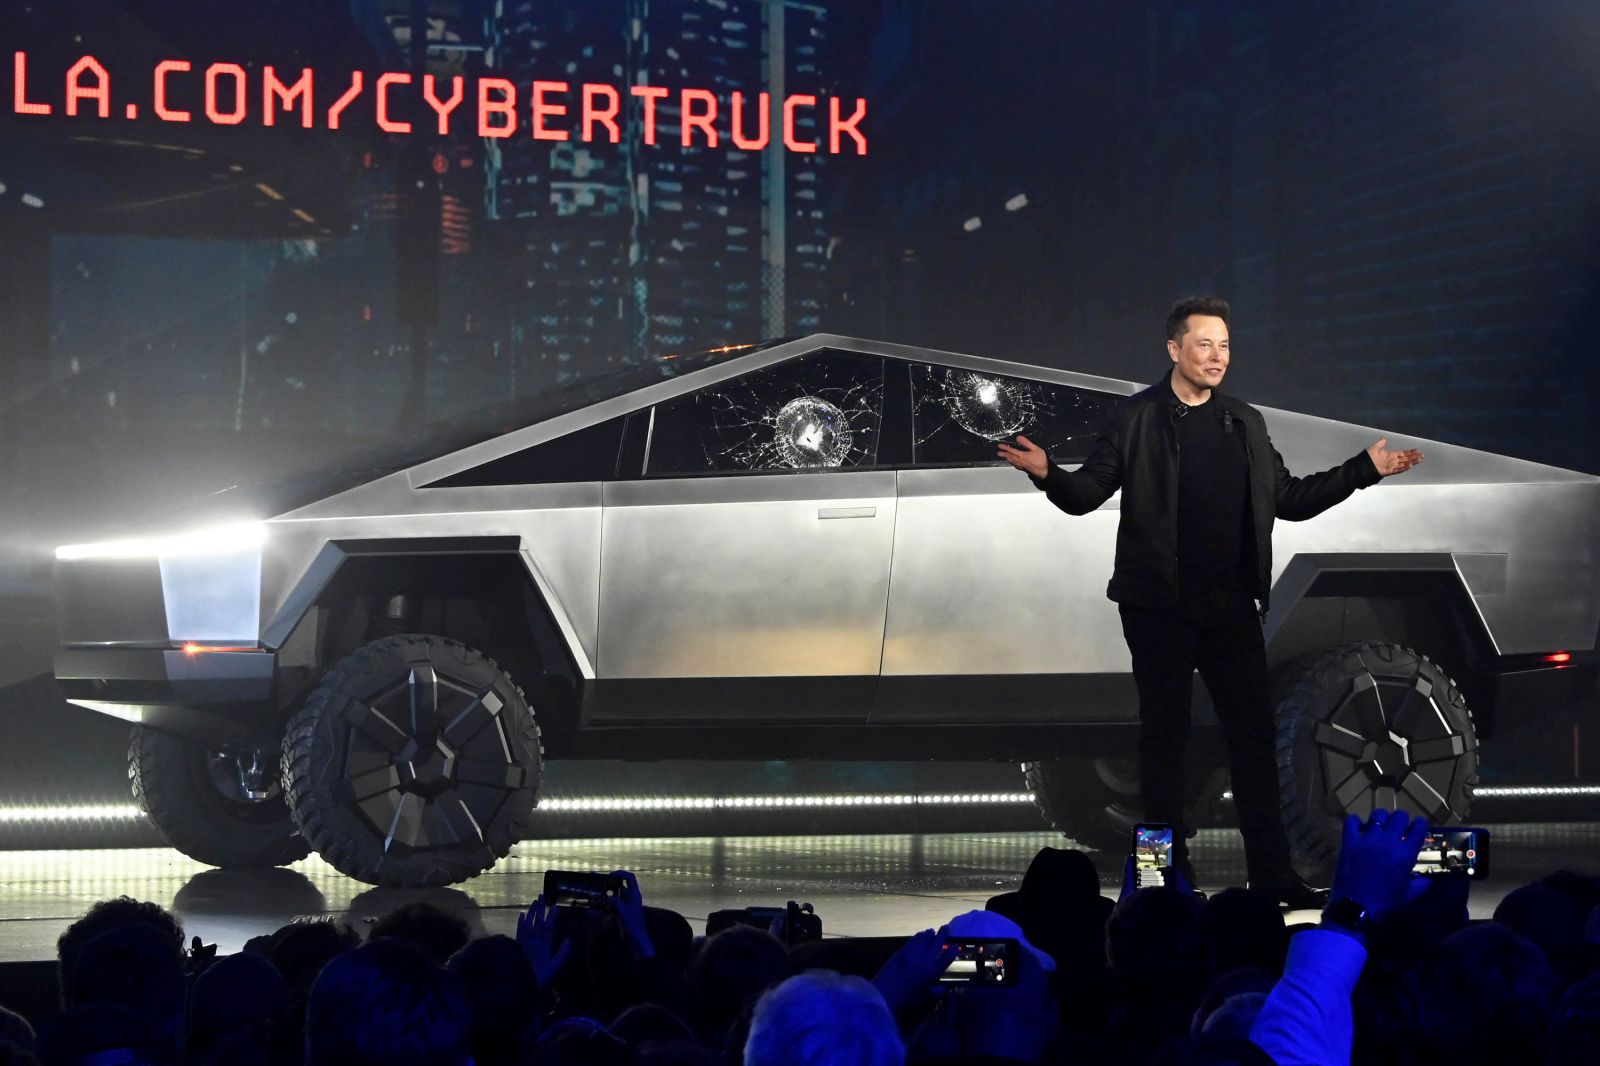 Mẫu xe bán tải chạy điện đầu tiên Cybertruck được Tesla ra mắt tại LA Auto Show 2019. Ảnh:p/CNBC.